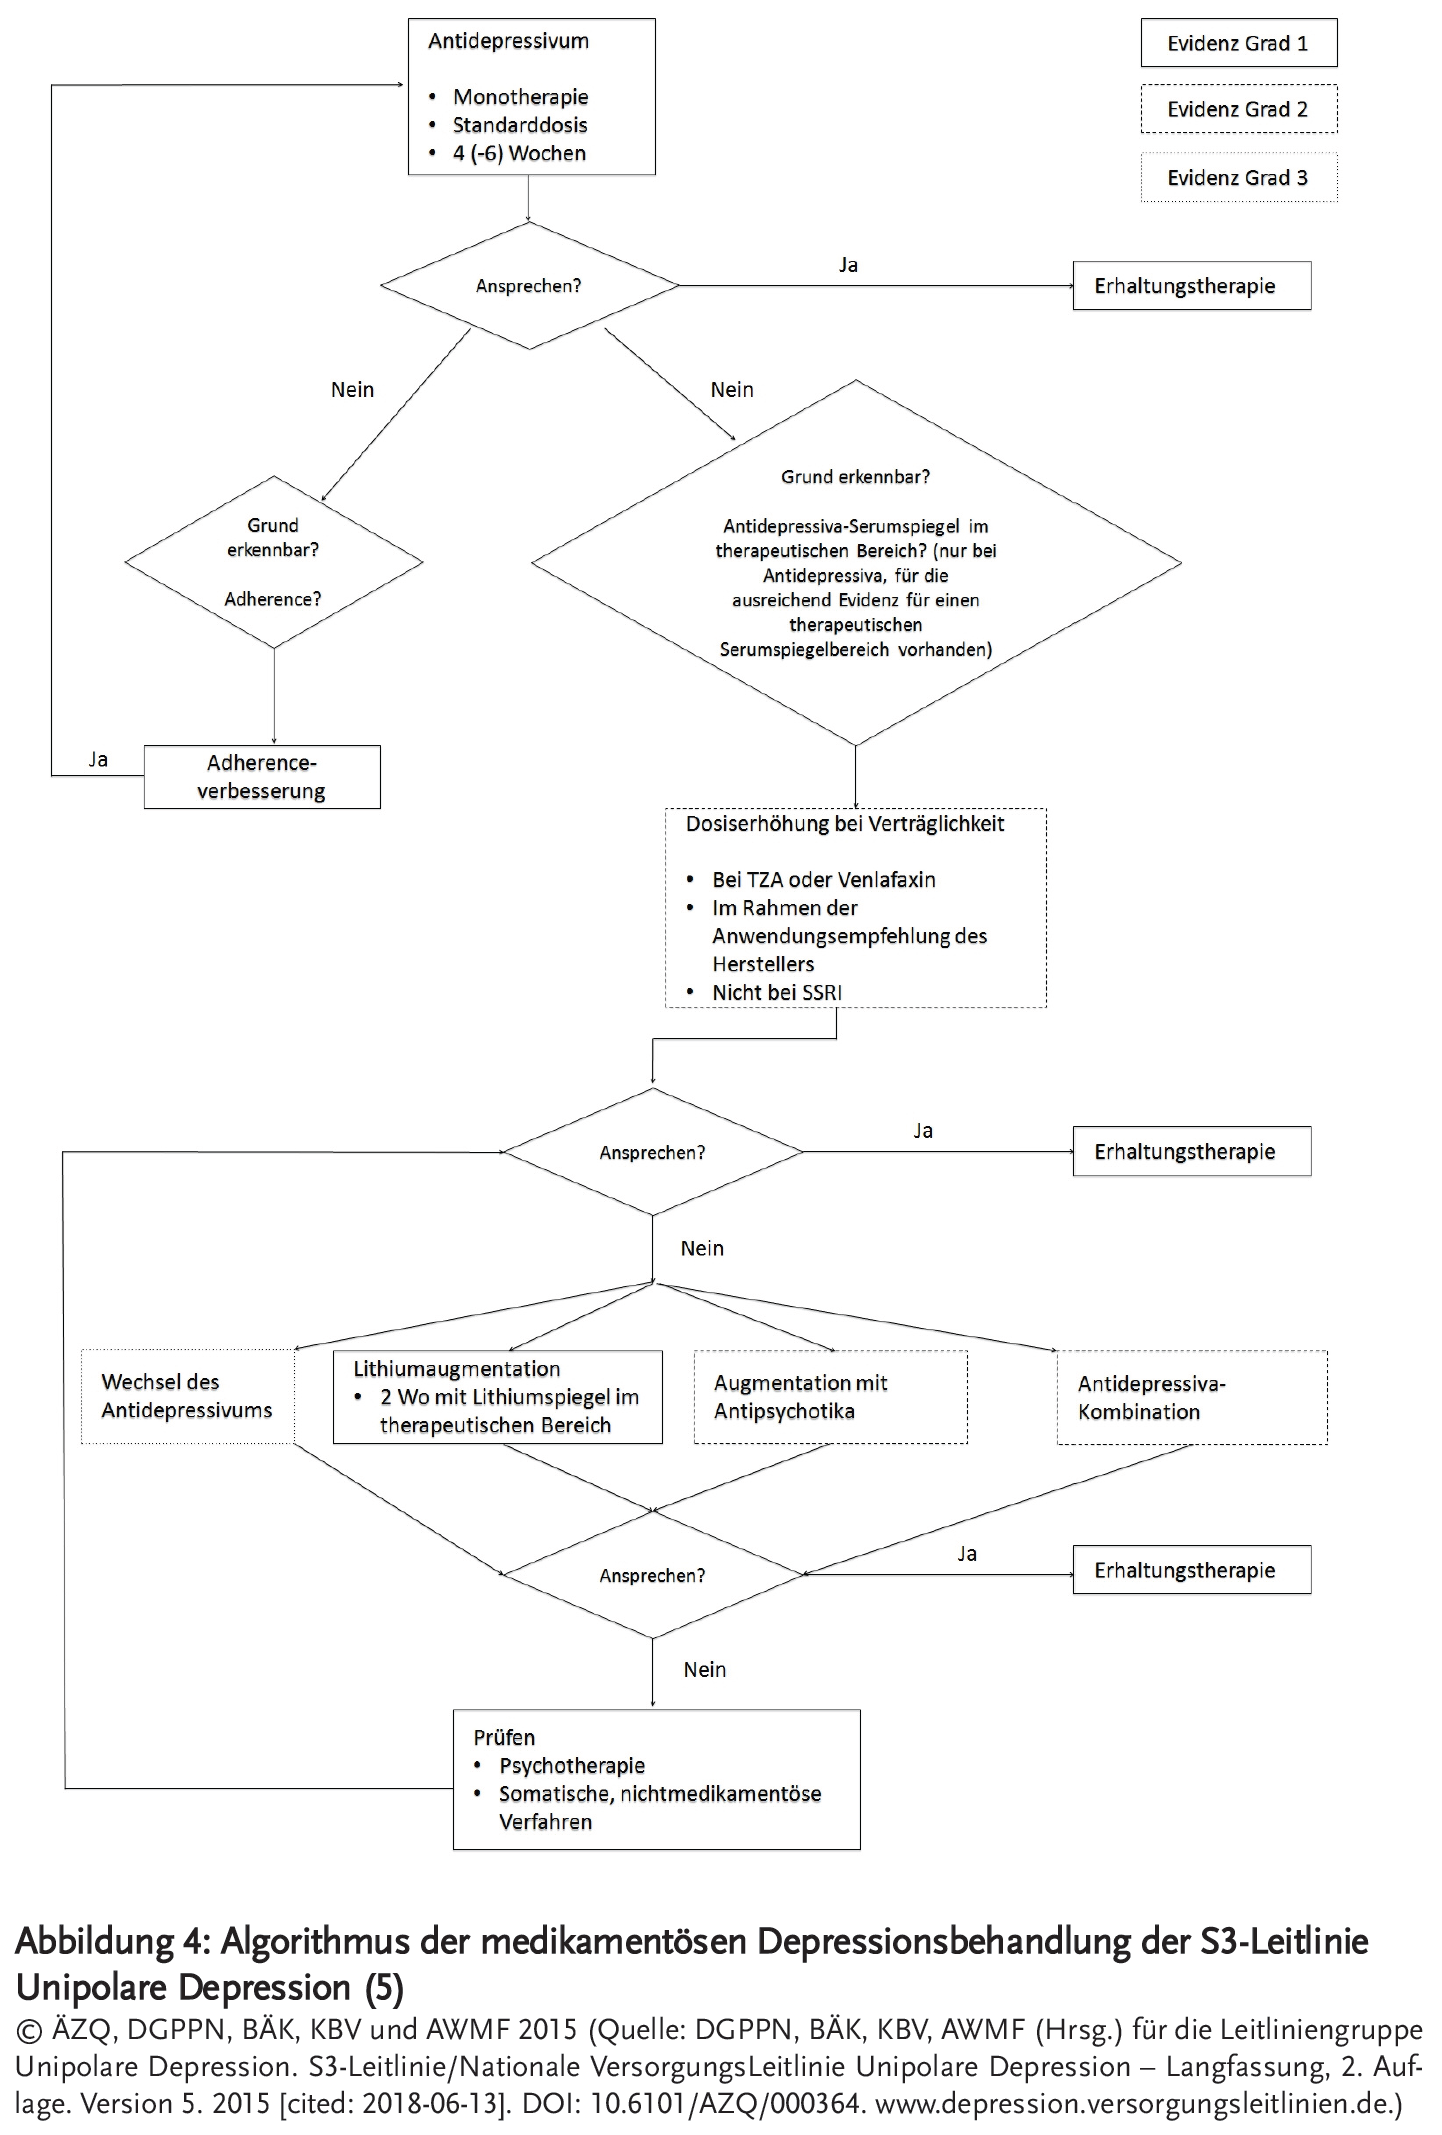 Abbildung 3: Algorithmus der medikamentösen Depressionsbehandlung der S3-Leitlinie Unipolare Depression (5)